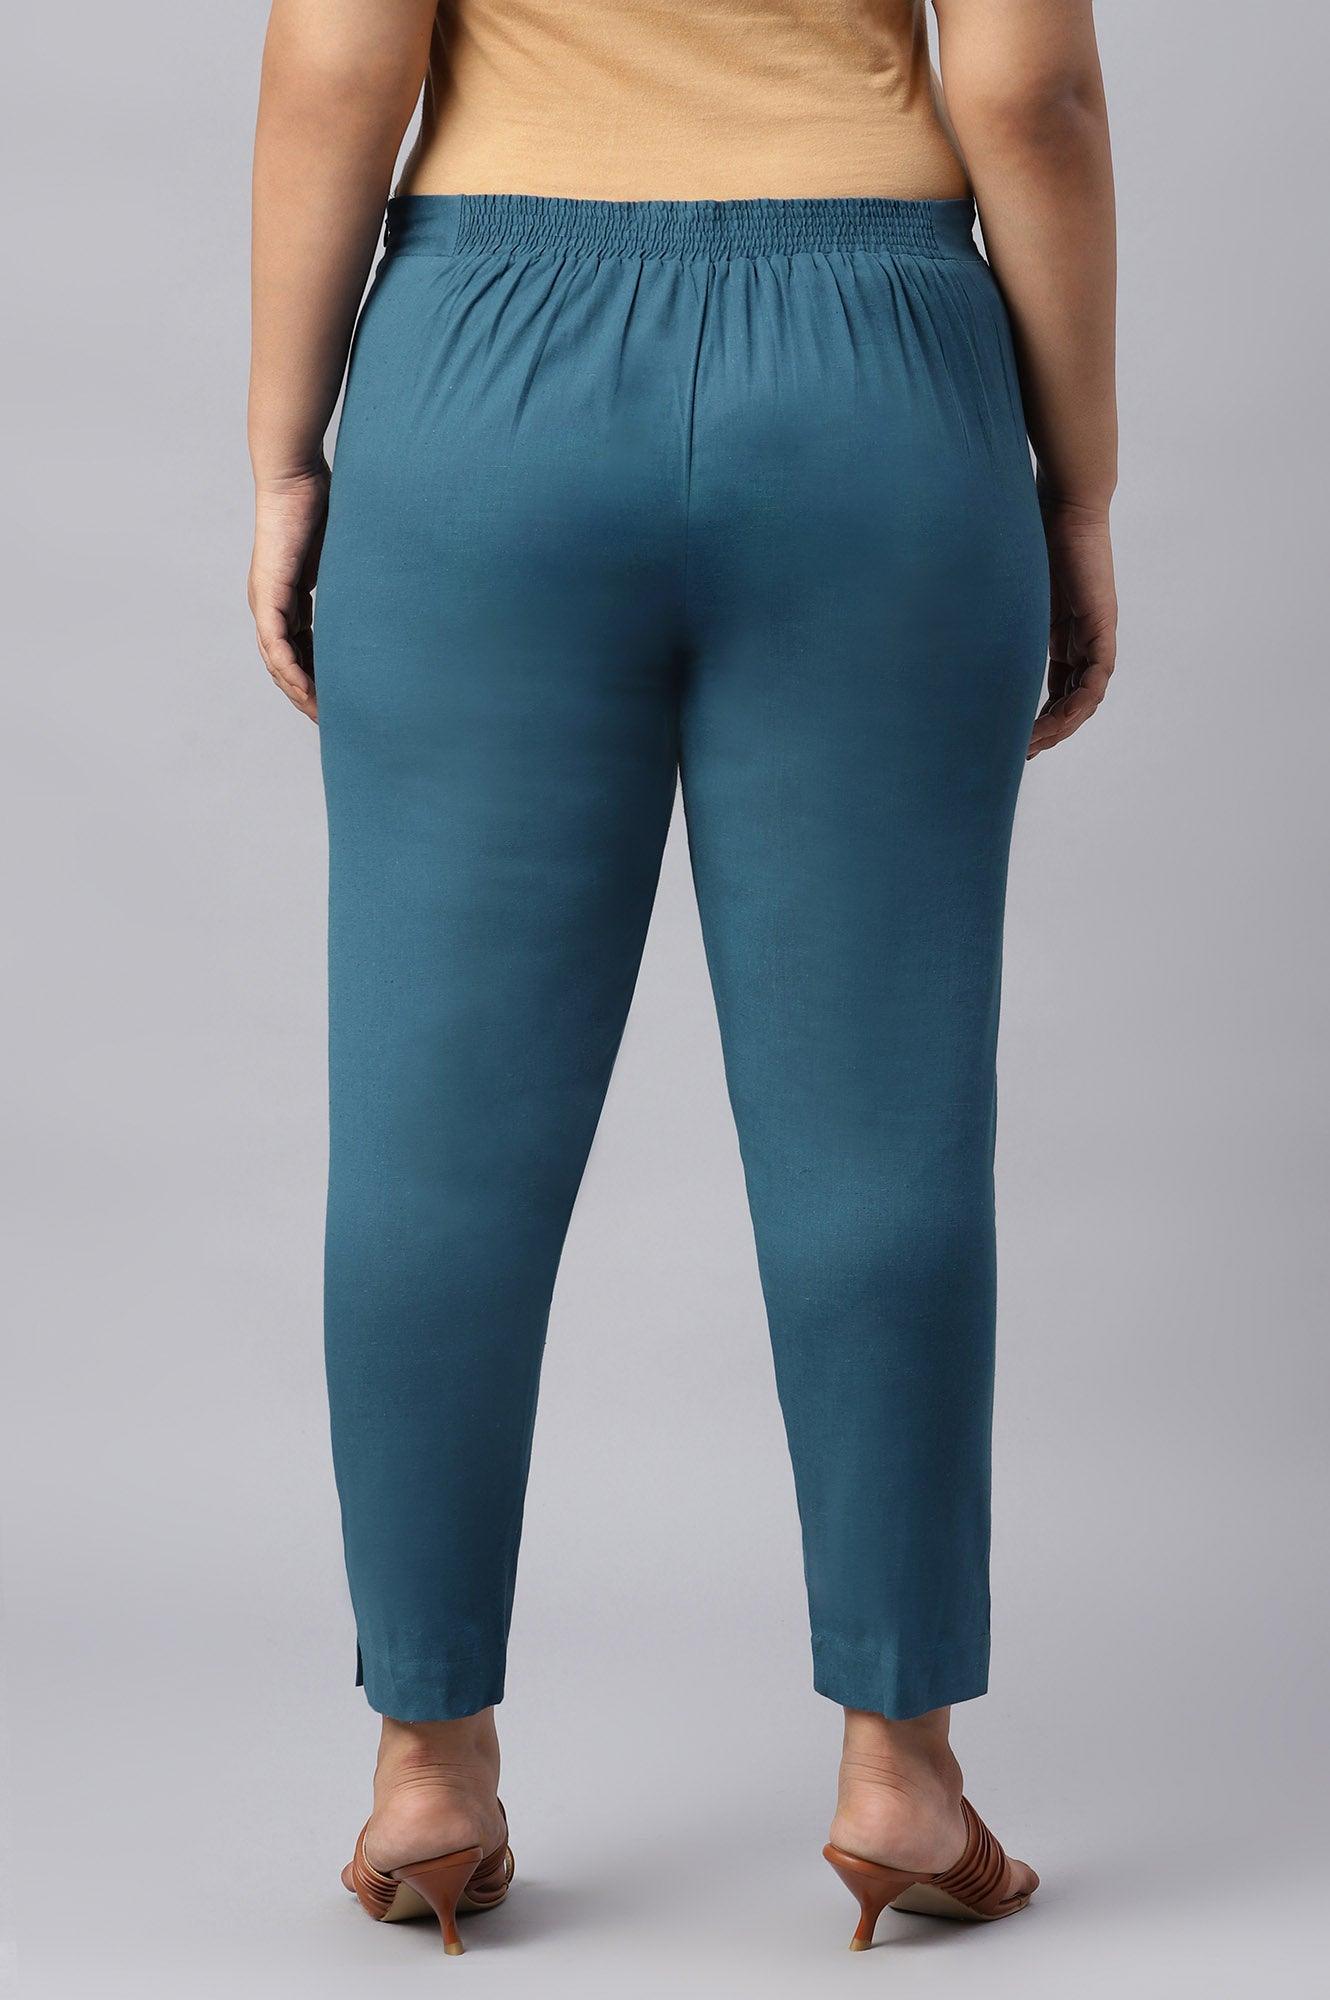 Plus Size Teal Blue Cotton Blend Slim Pants - wforwoman